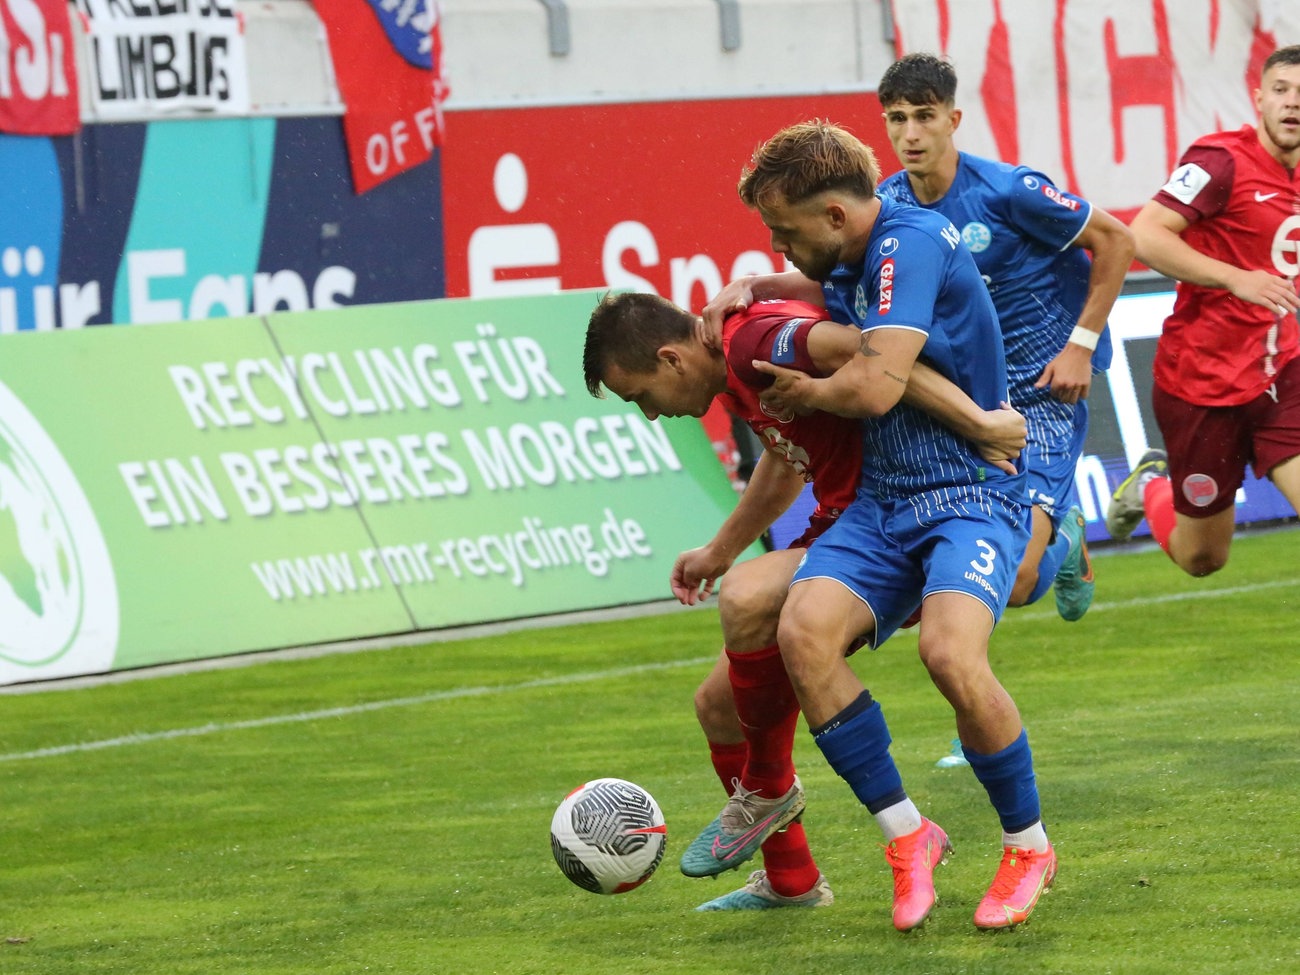 Enttäuschung bei Kickers Offenbach Stuttgart schockt OFC spät hessenschau.de Regionalliga